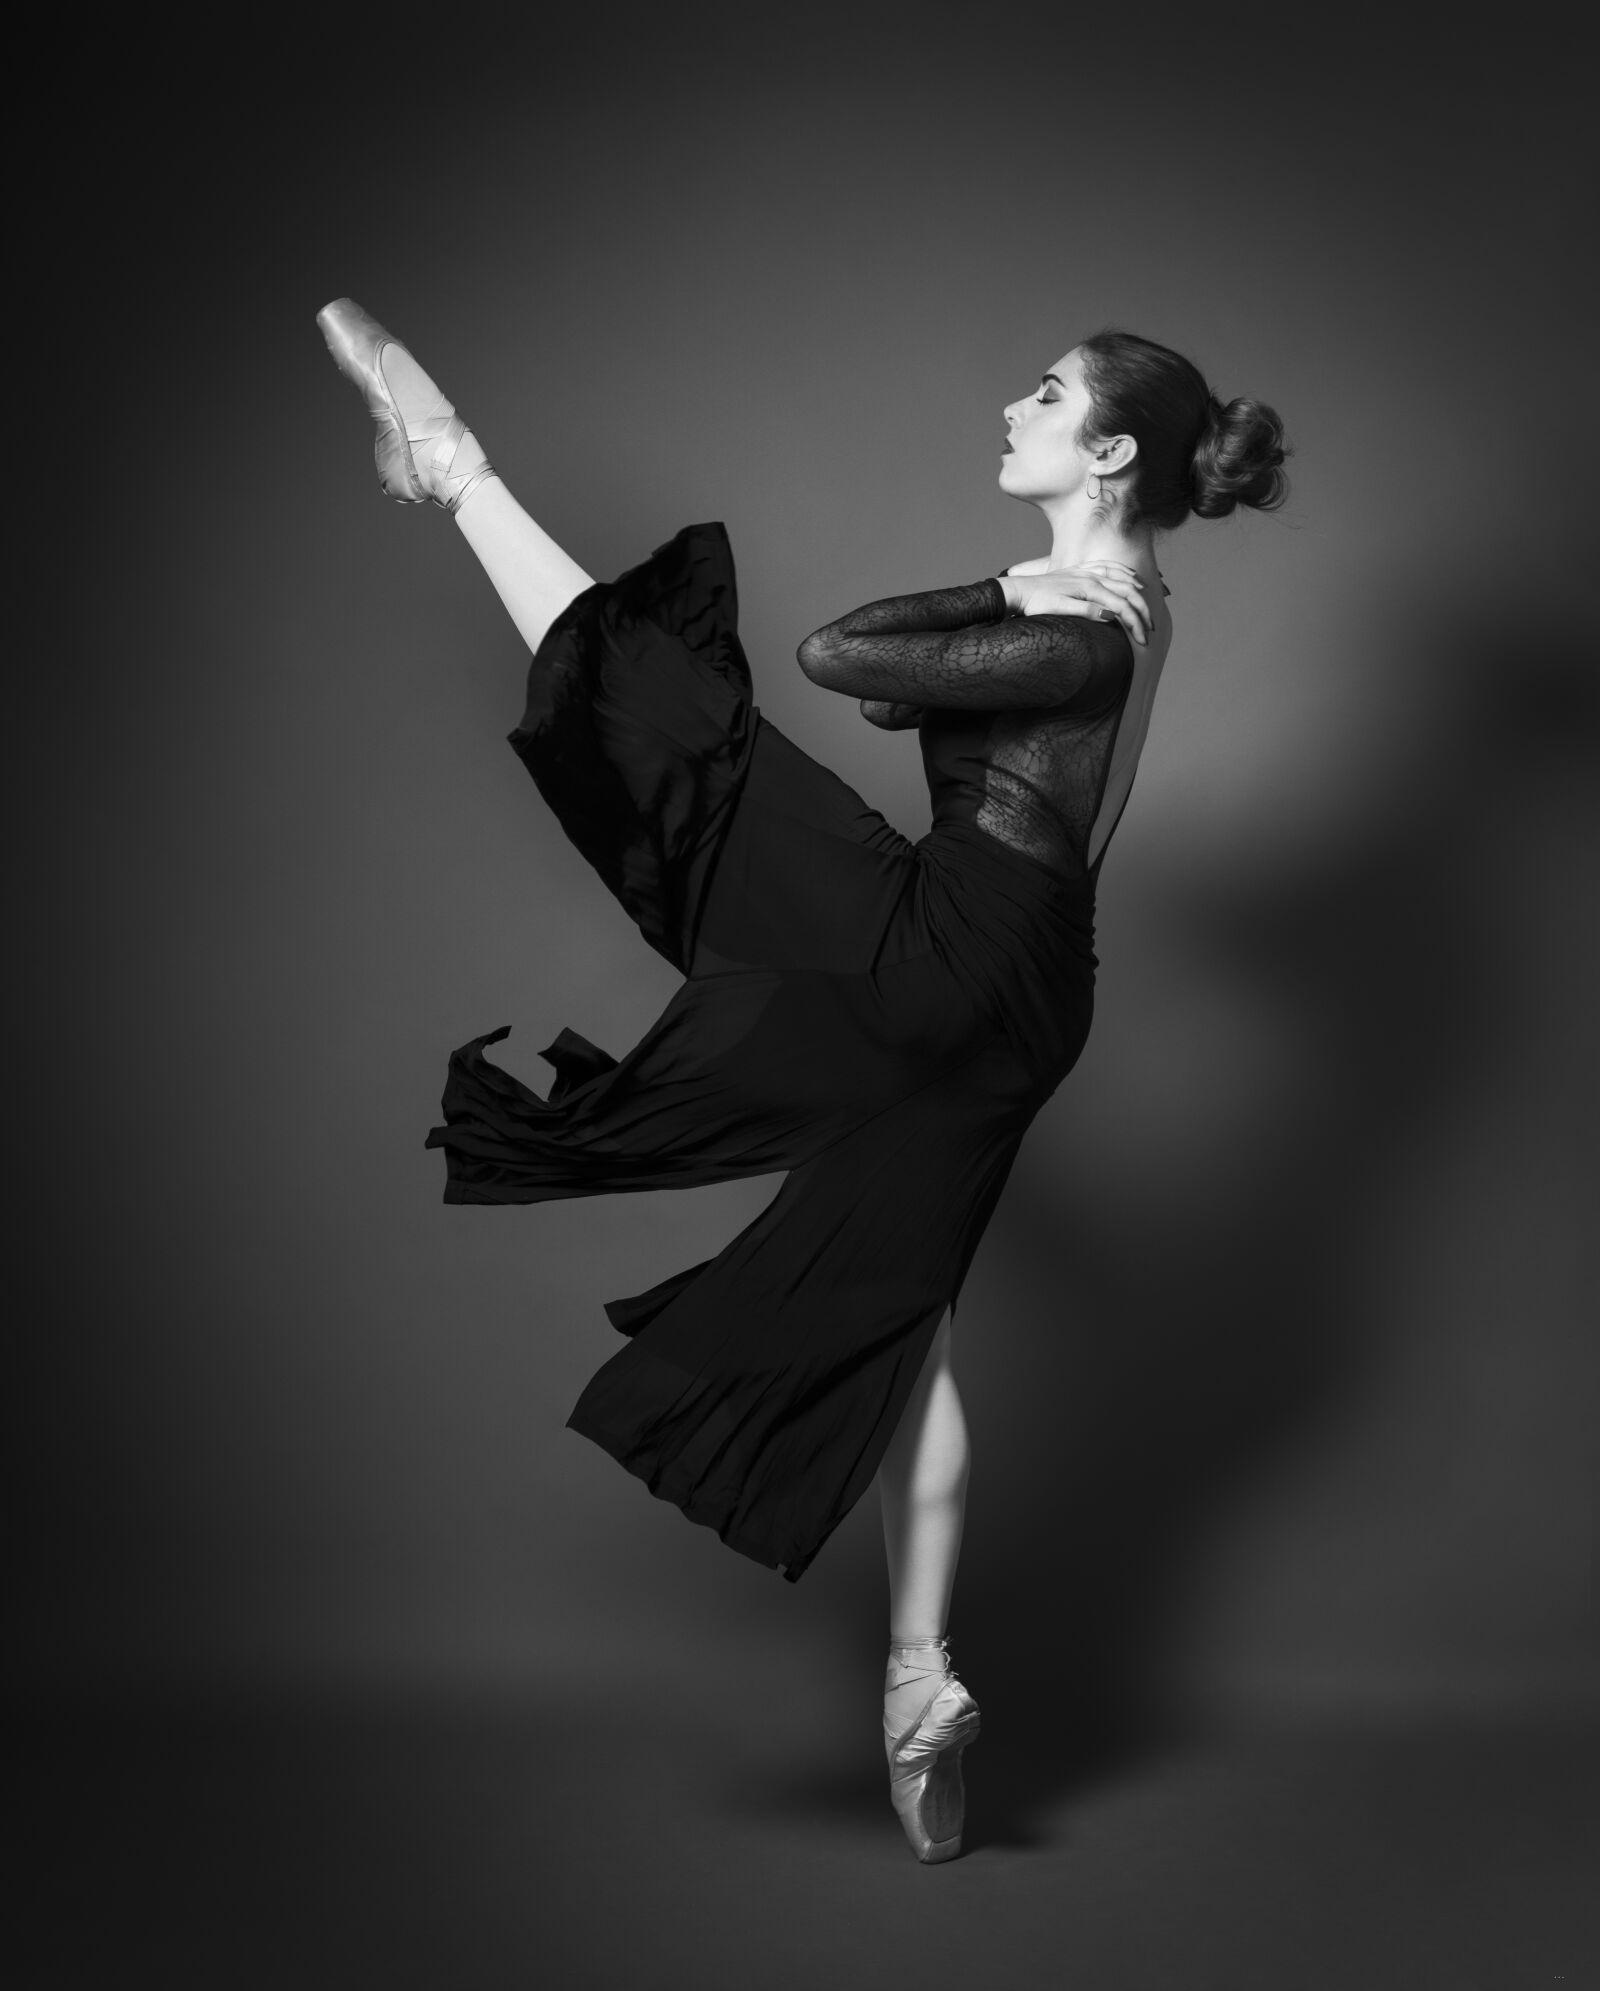 Nikon D850 sample photo. Danse, classique, ballet photography